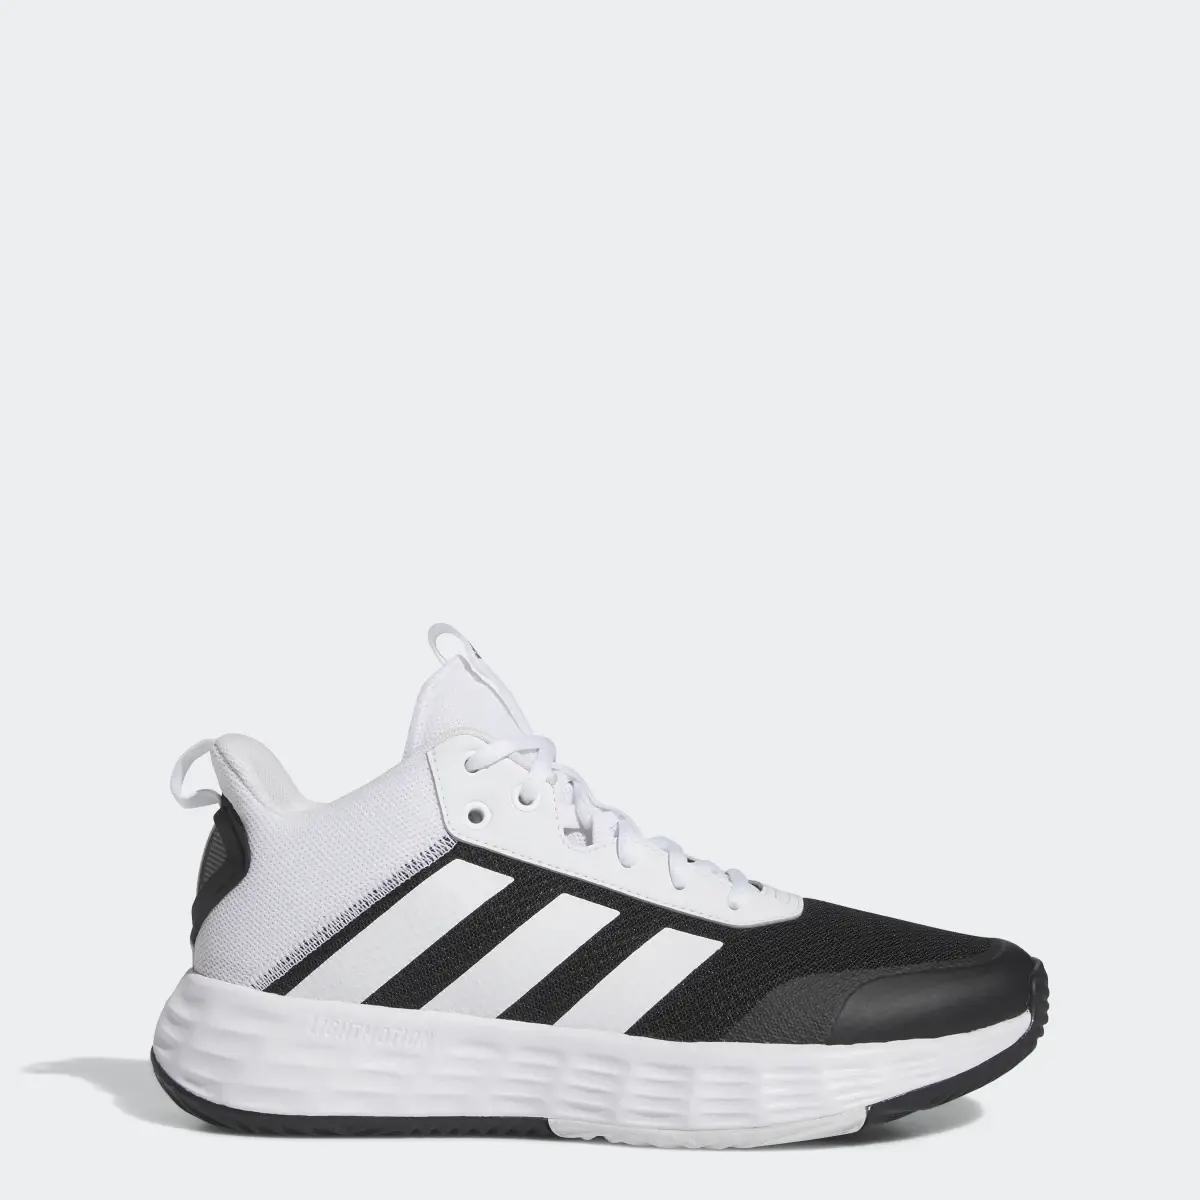 Adidas Ownthegame Ayakkabı. 1